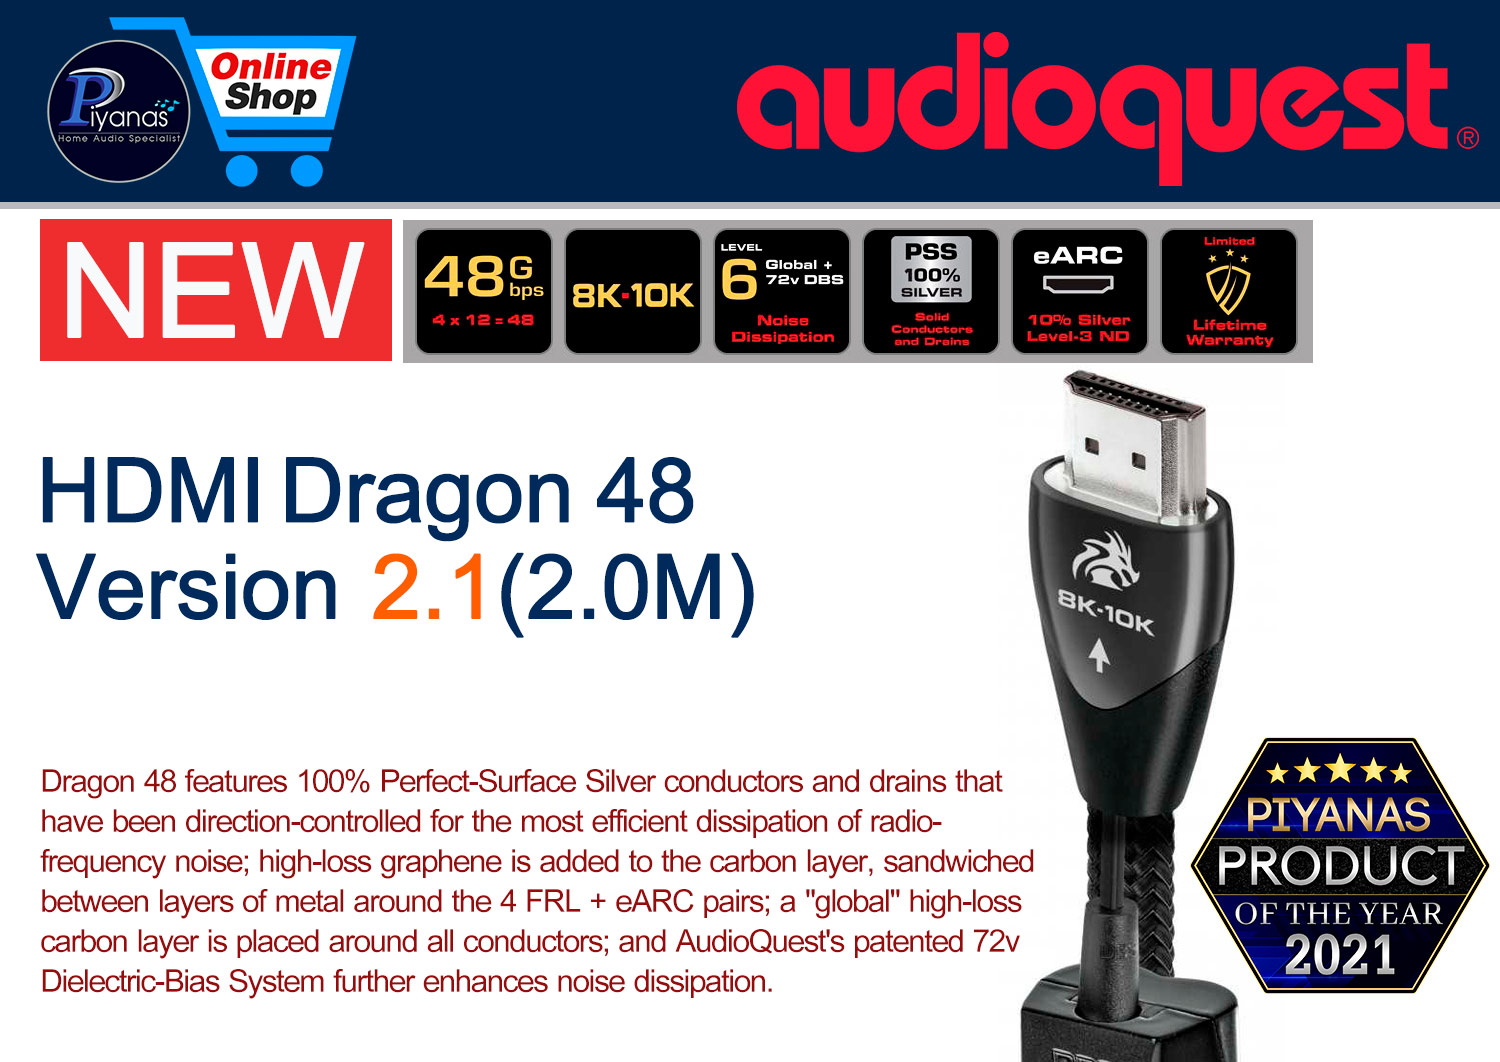 HDMI-Dragon 48 Version 2.1 (2.0M)